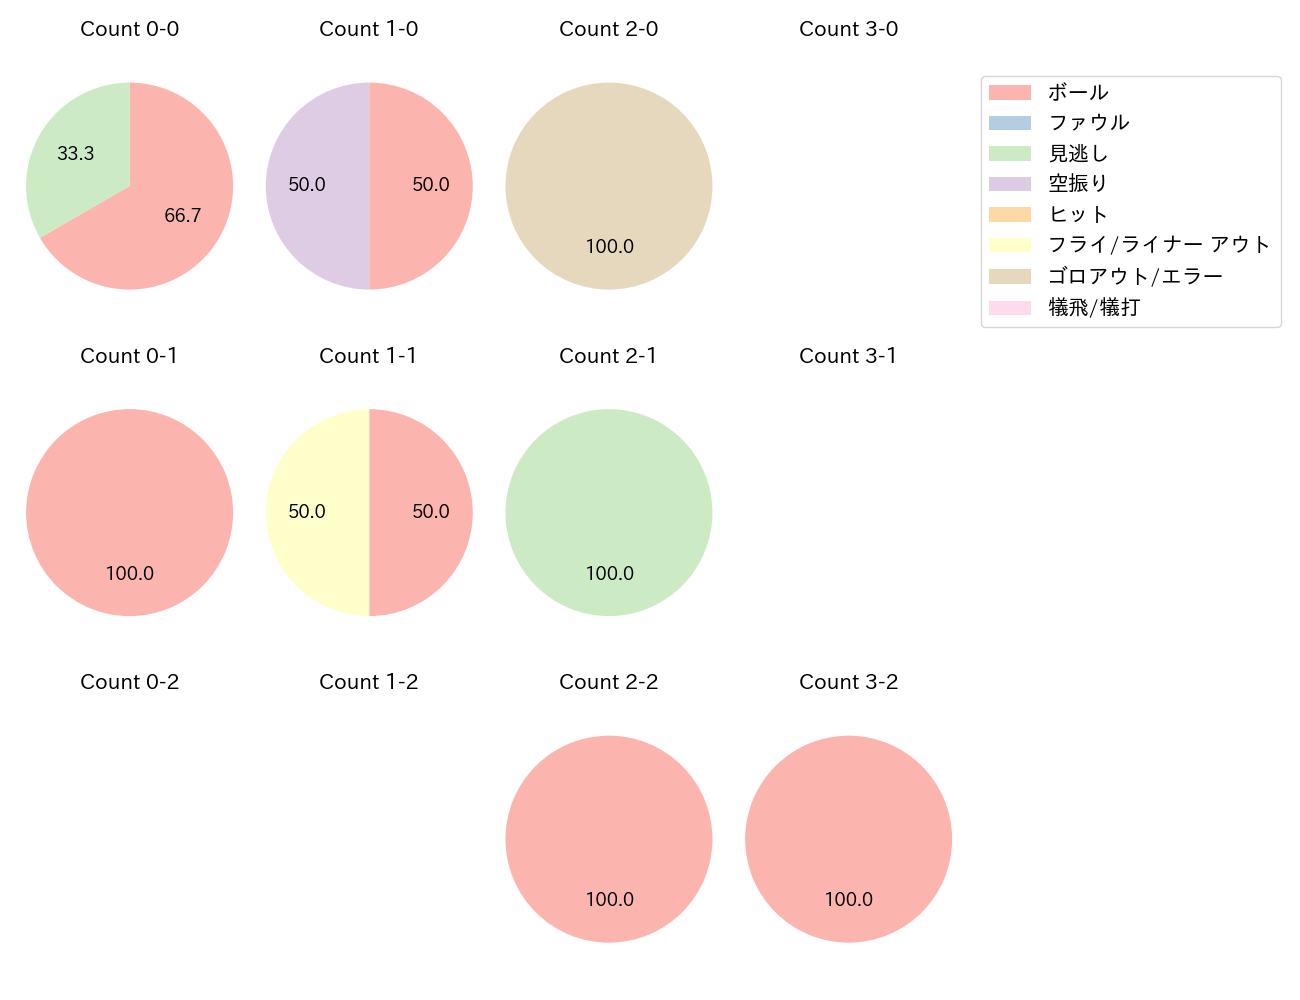 細川 成也の球数分布(2021年3月)